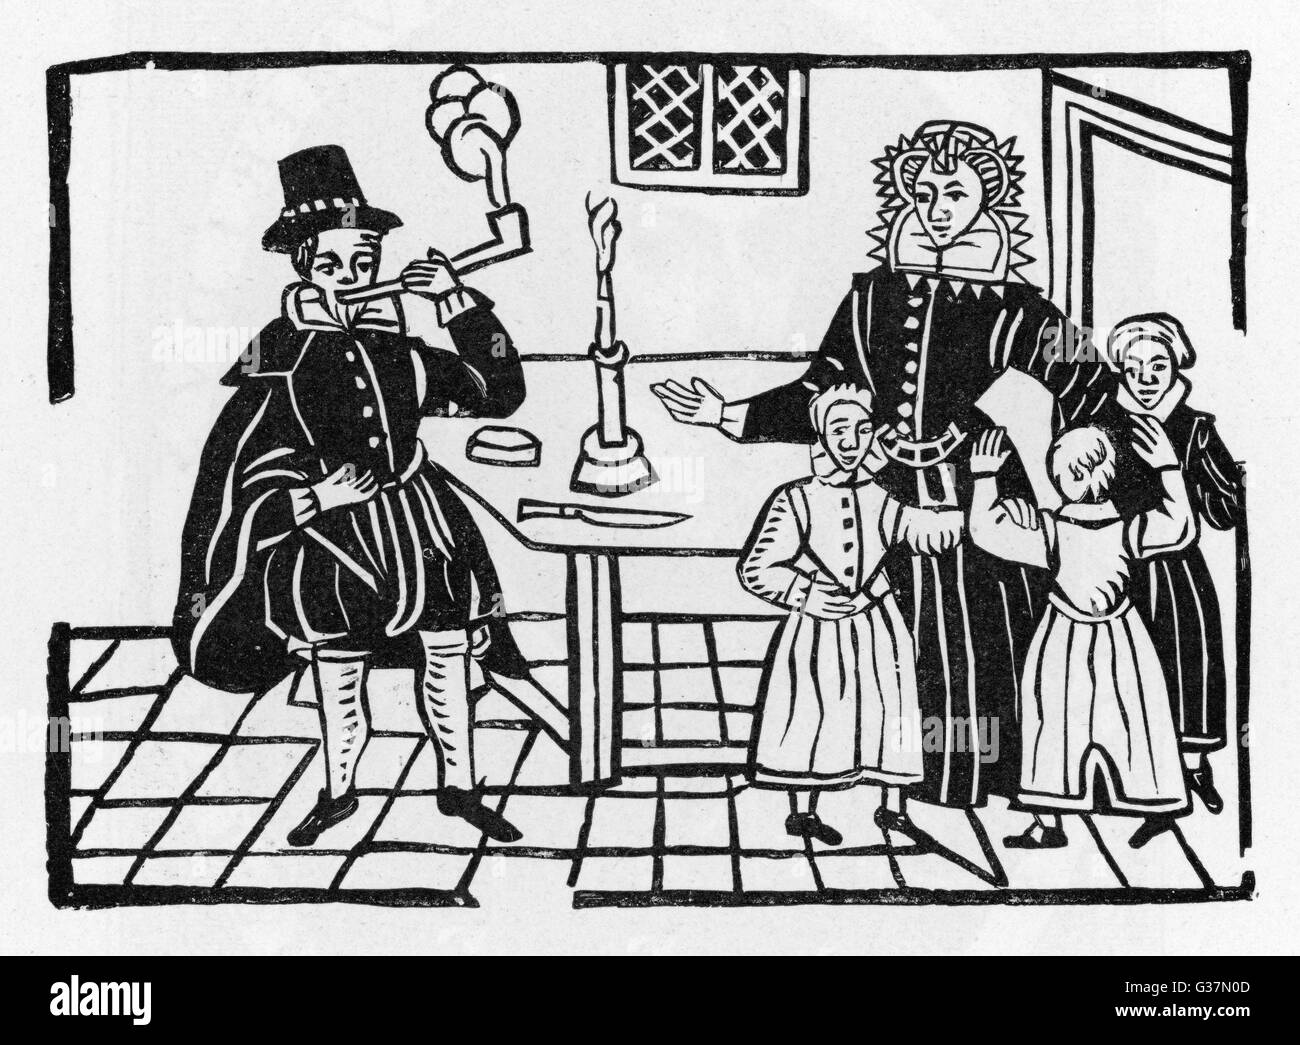 Familie alarmiert durch Anblick von Vater raucht eine Pfeife.         Datum: 17. Jahrhundert Stockfoto